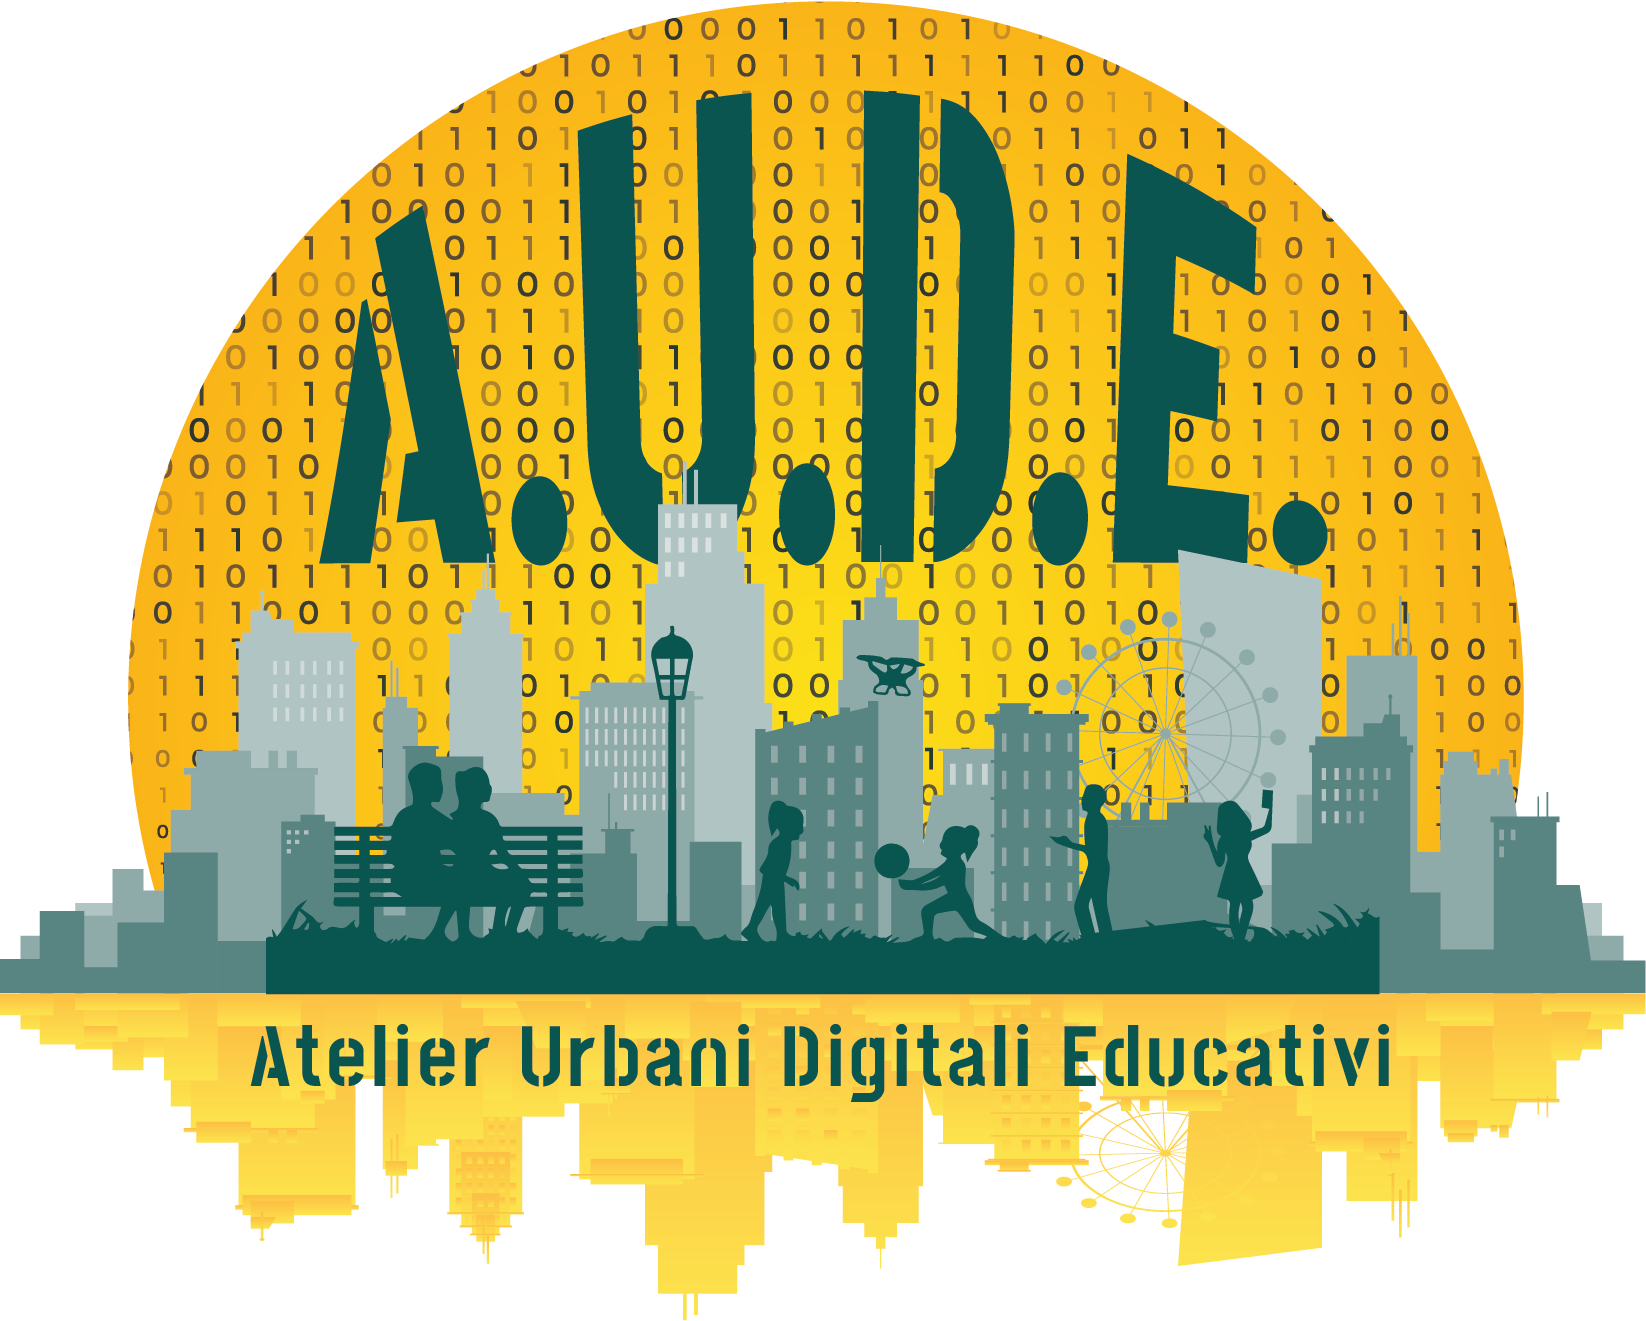 Logo AUDE - Progetto Atelier Urbani Digitali Educativi di Città di Torino, Fondazione per la Scuola, Ags Territorio